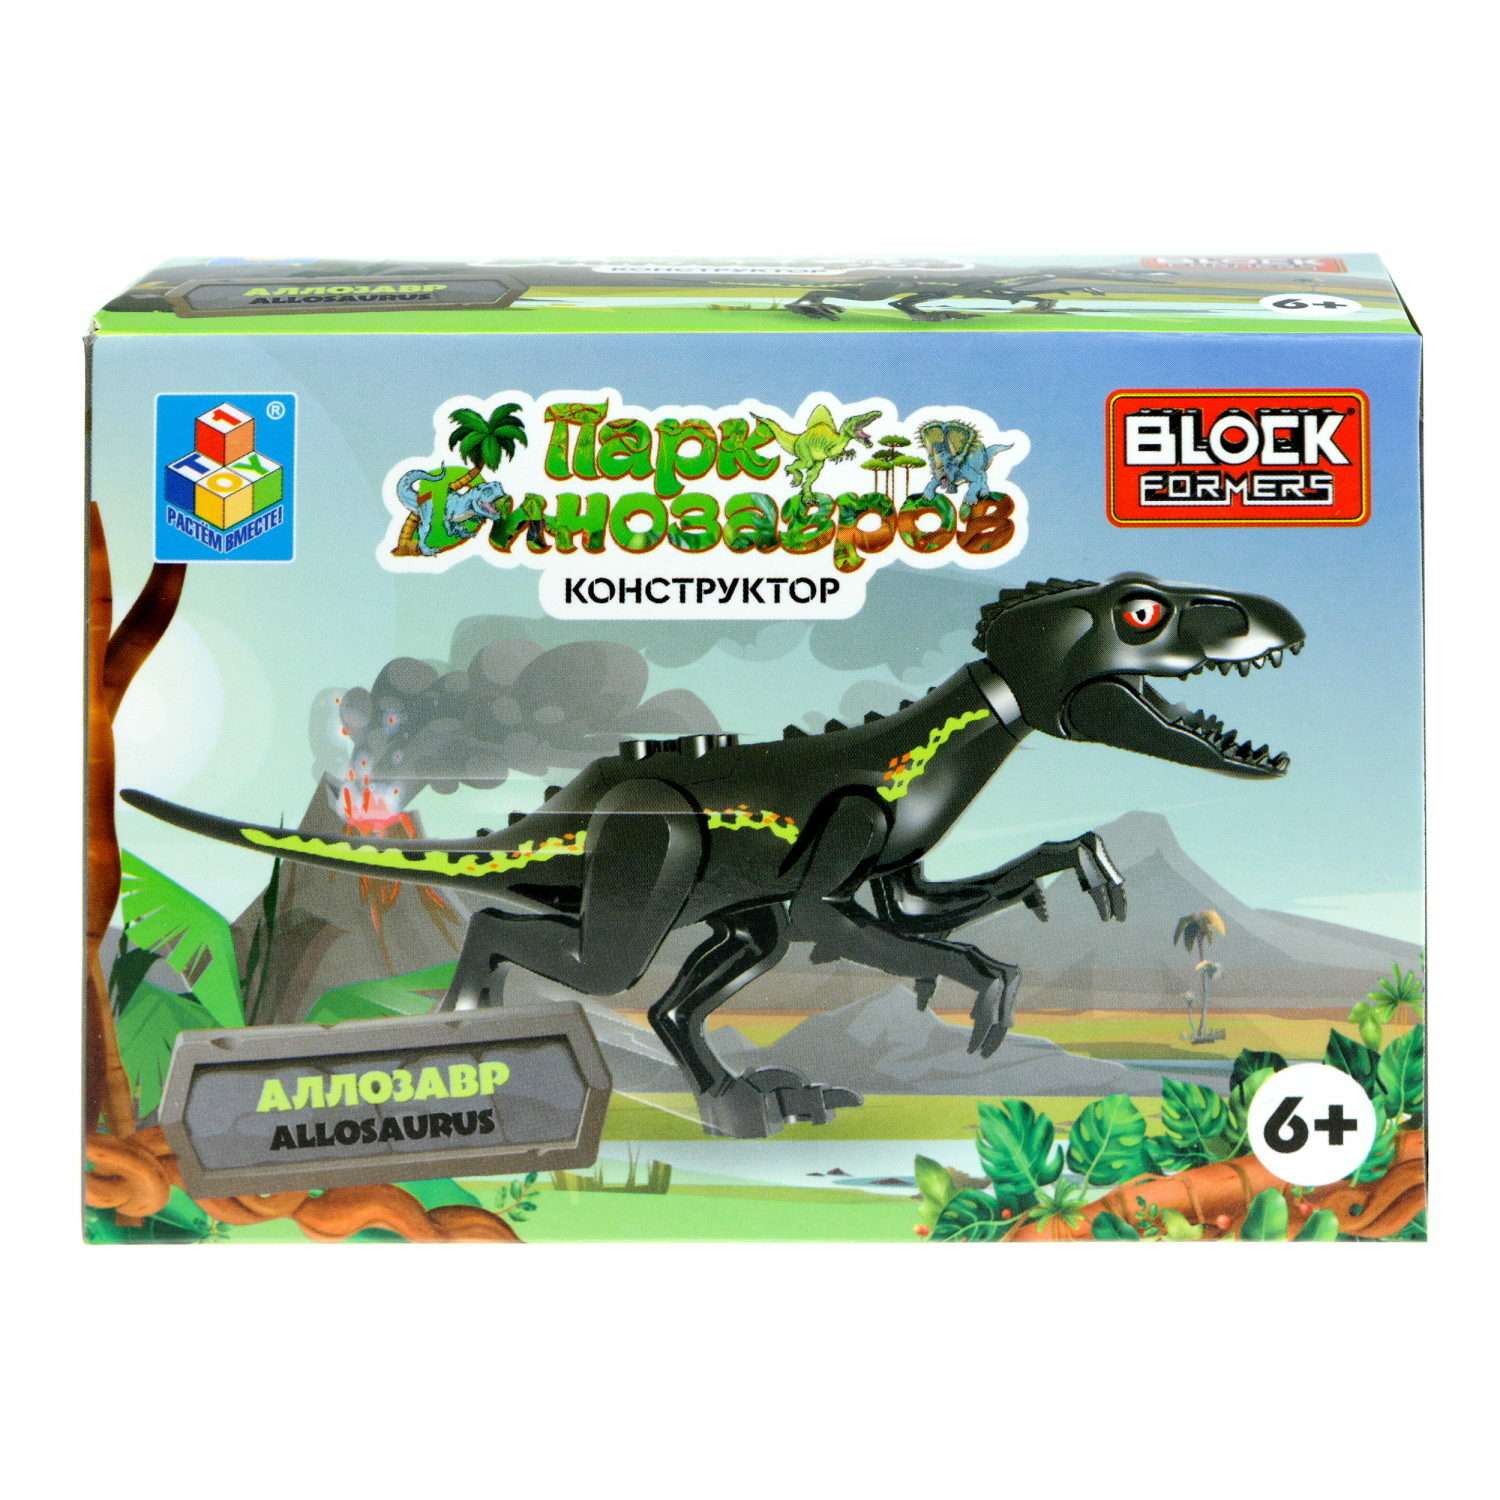 Игрушка сборная Blockformers 1Toy Парк динозавров Аллозавр Т23229-1 - фото 9